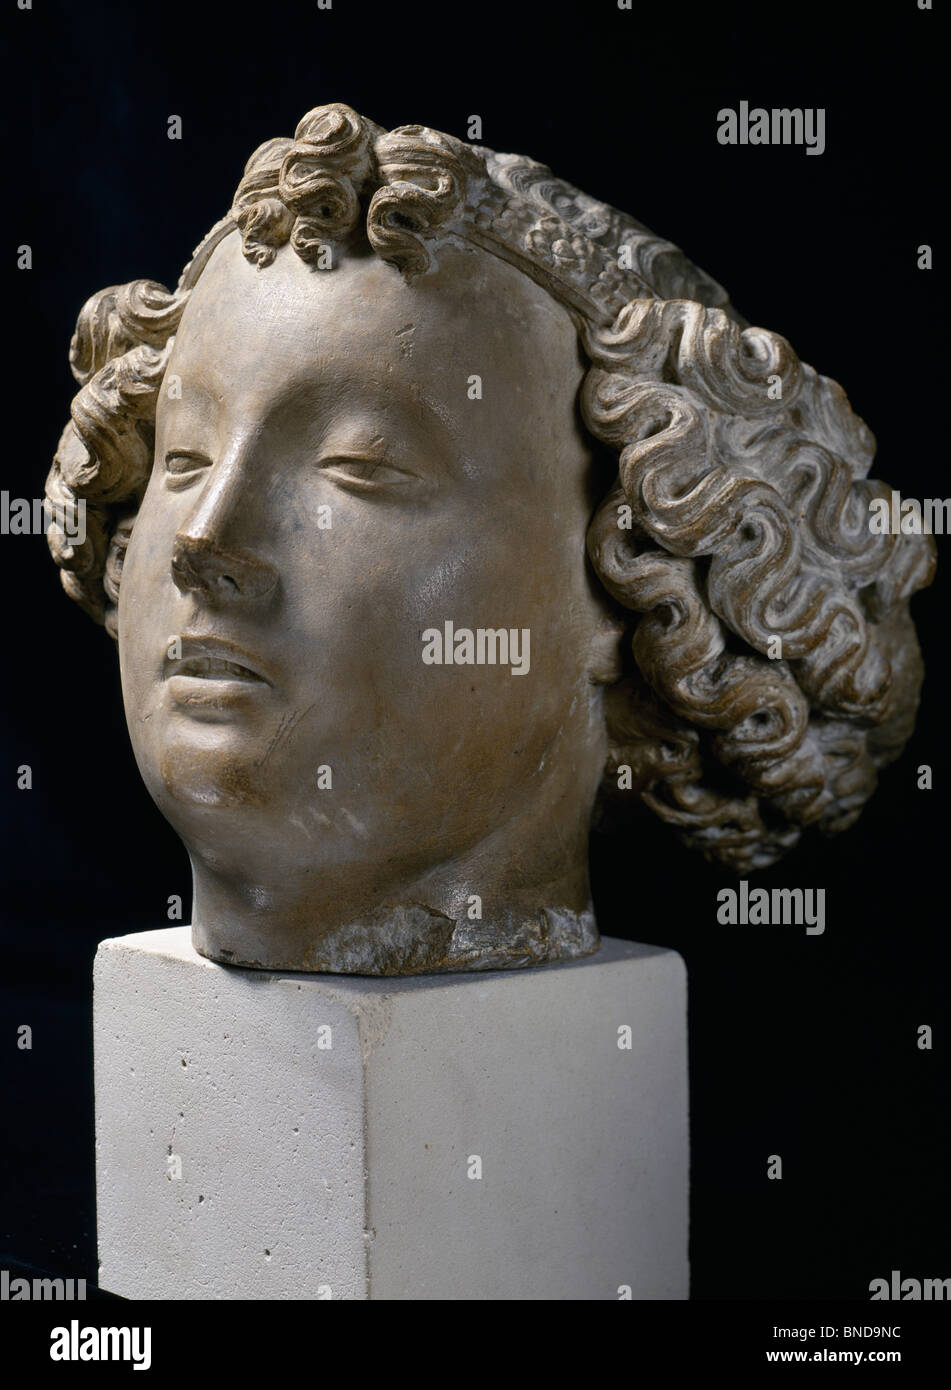 Head of an Angel, sculpture, France, Paris, Musee de la Ville de Paris Stock Photo